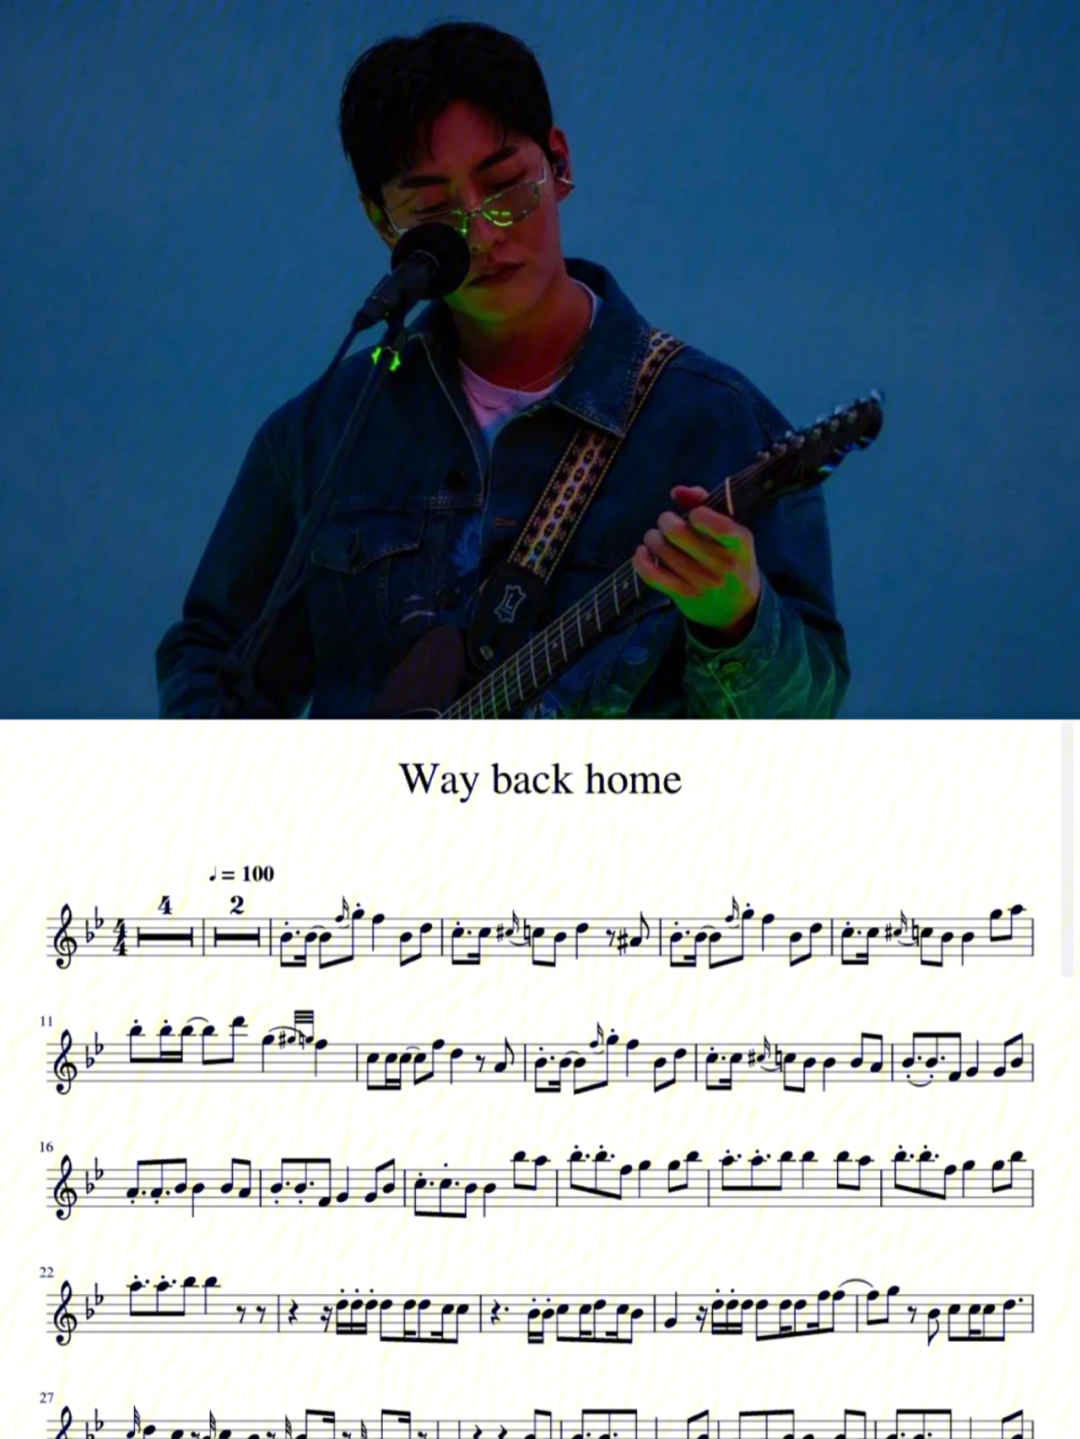 韩国歌手shaun的《way back home》 ,很火很好听的歌,节奏欢快,旋律